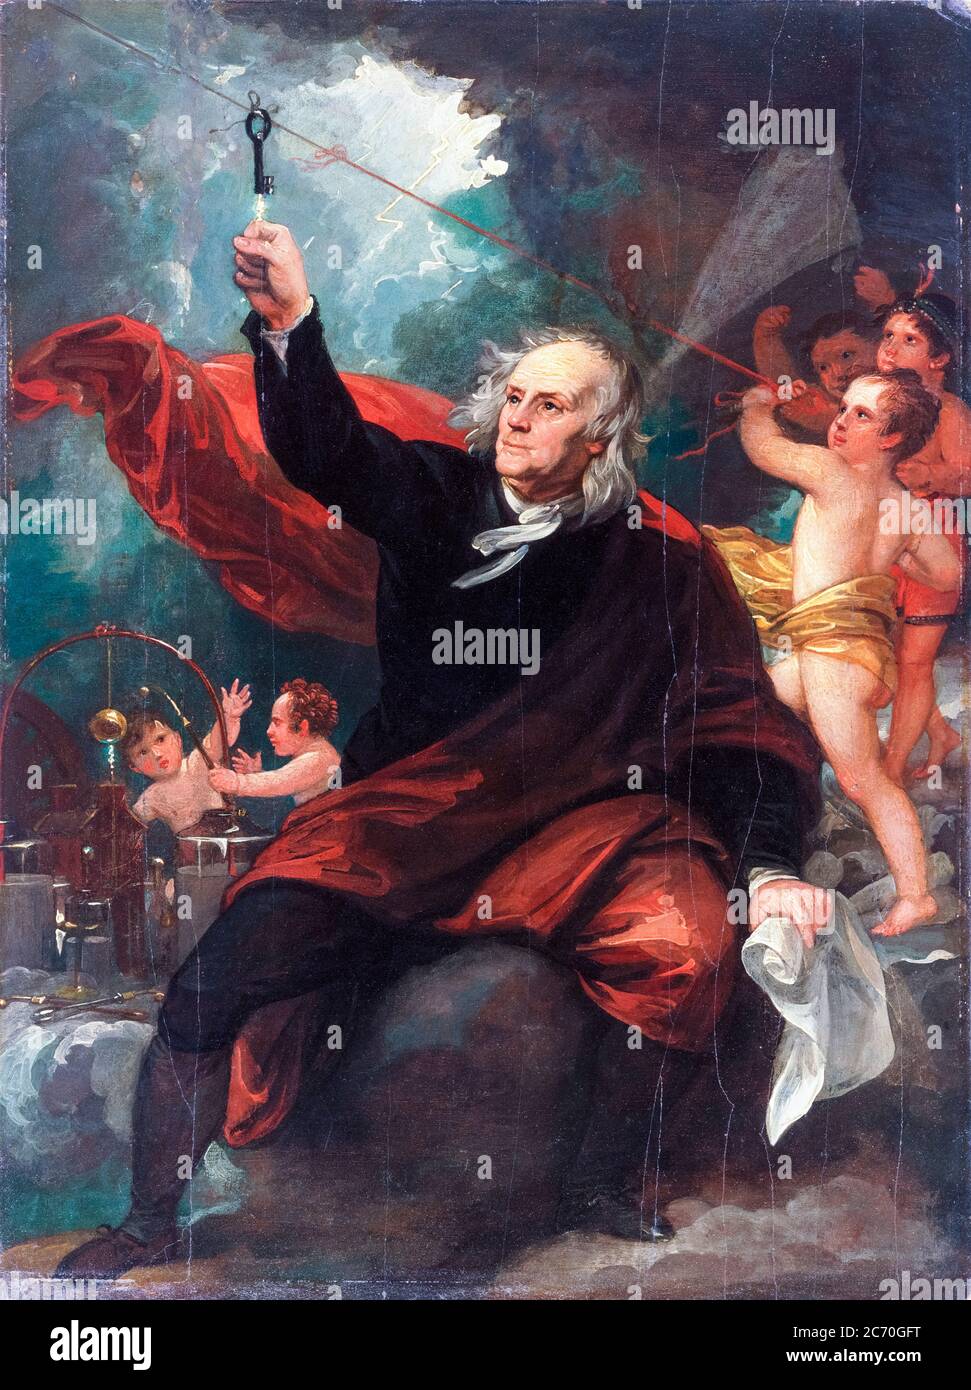 Benjamin Franklin dessinant l'électricité du ciel, peinture de Benjamin West, vers 1816 Banque D'Images